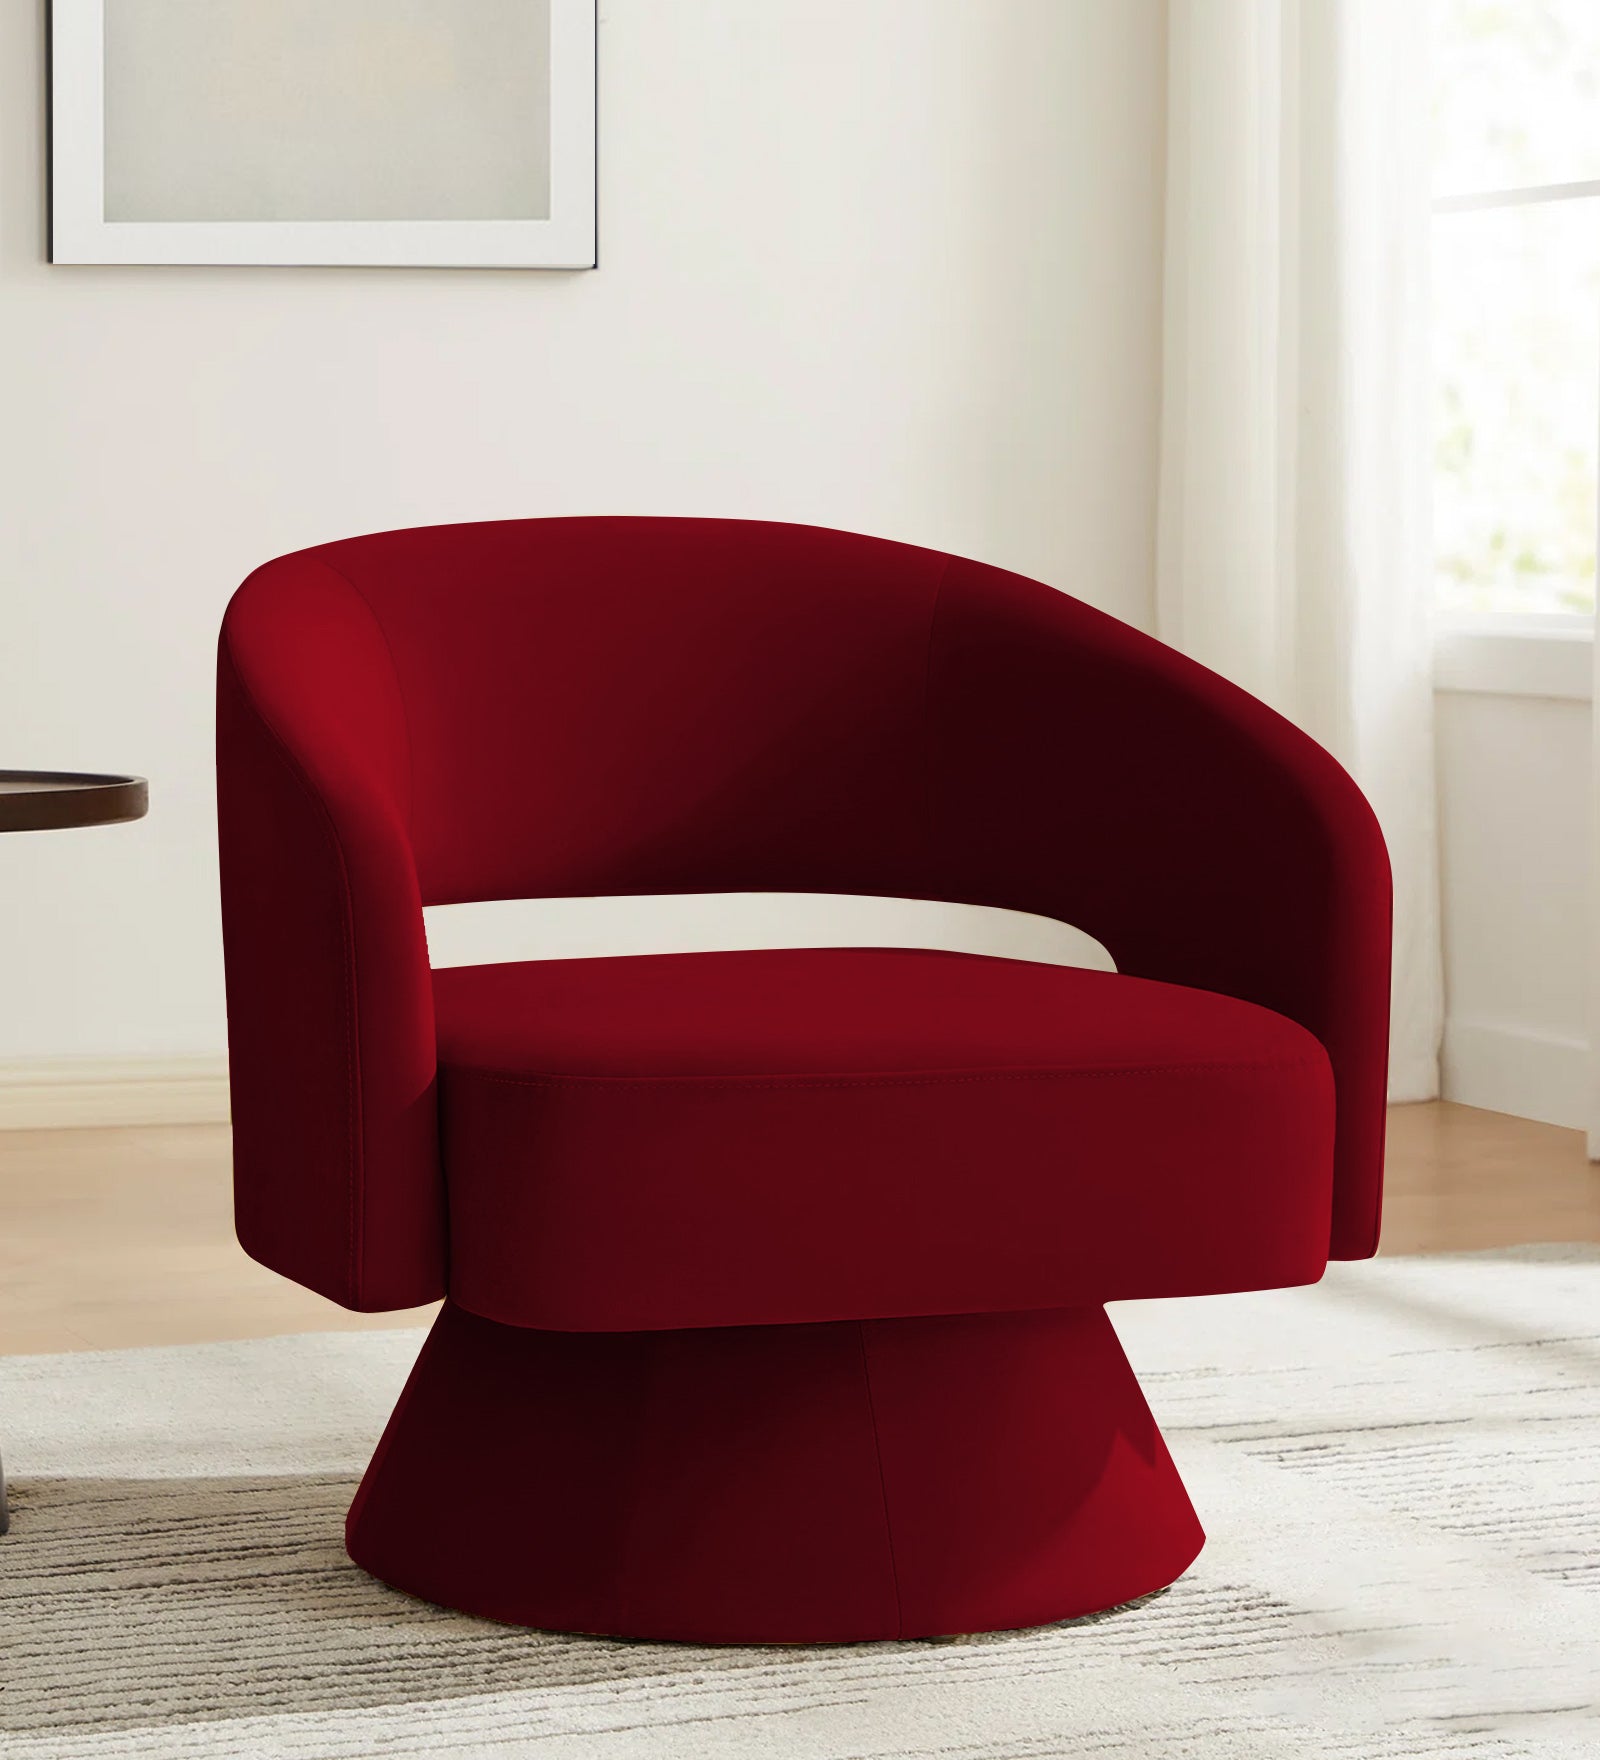 Pendra Velvet Swivel Chair in Cherry Red Colour